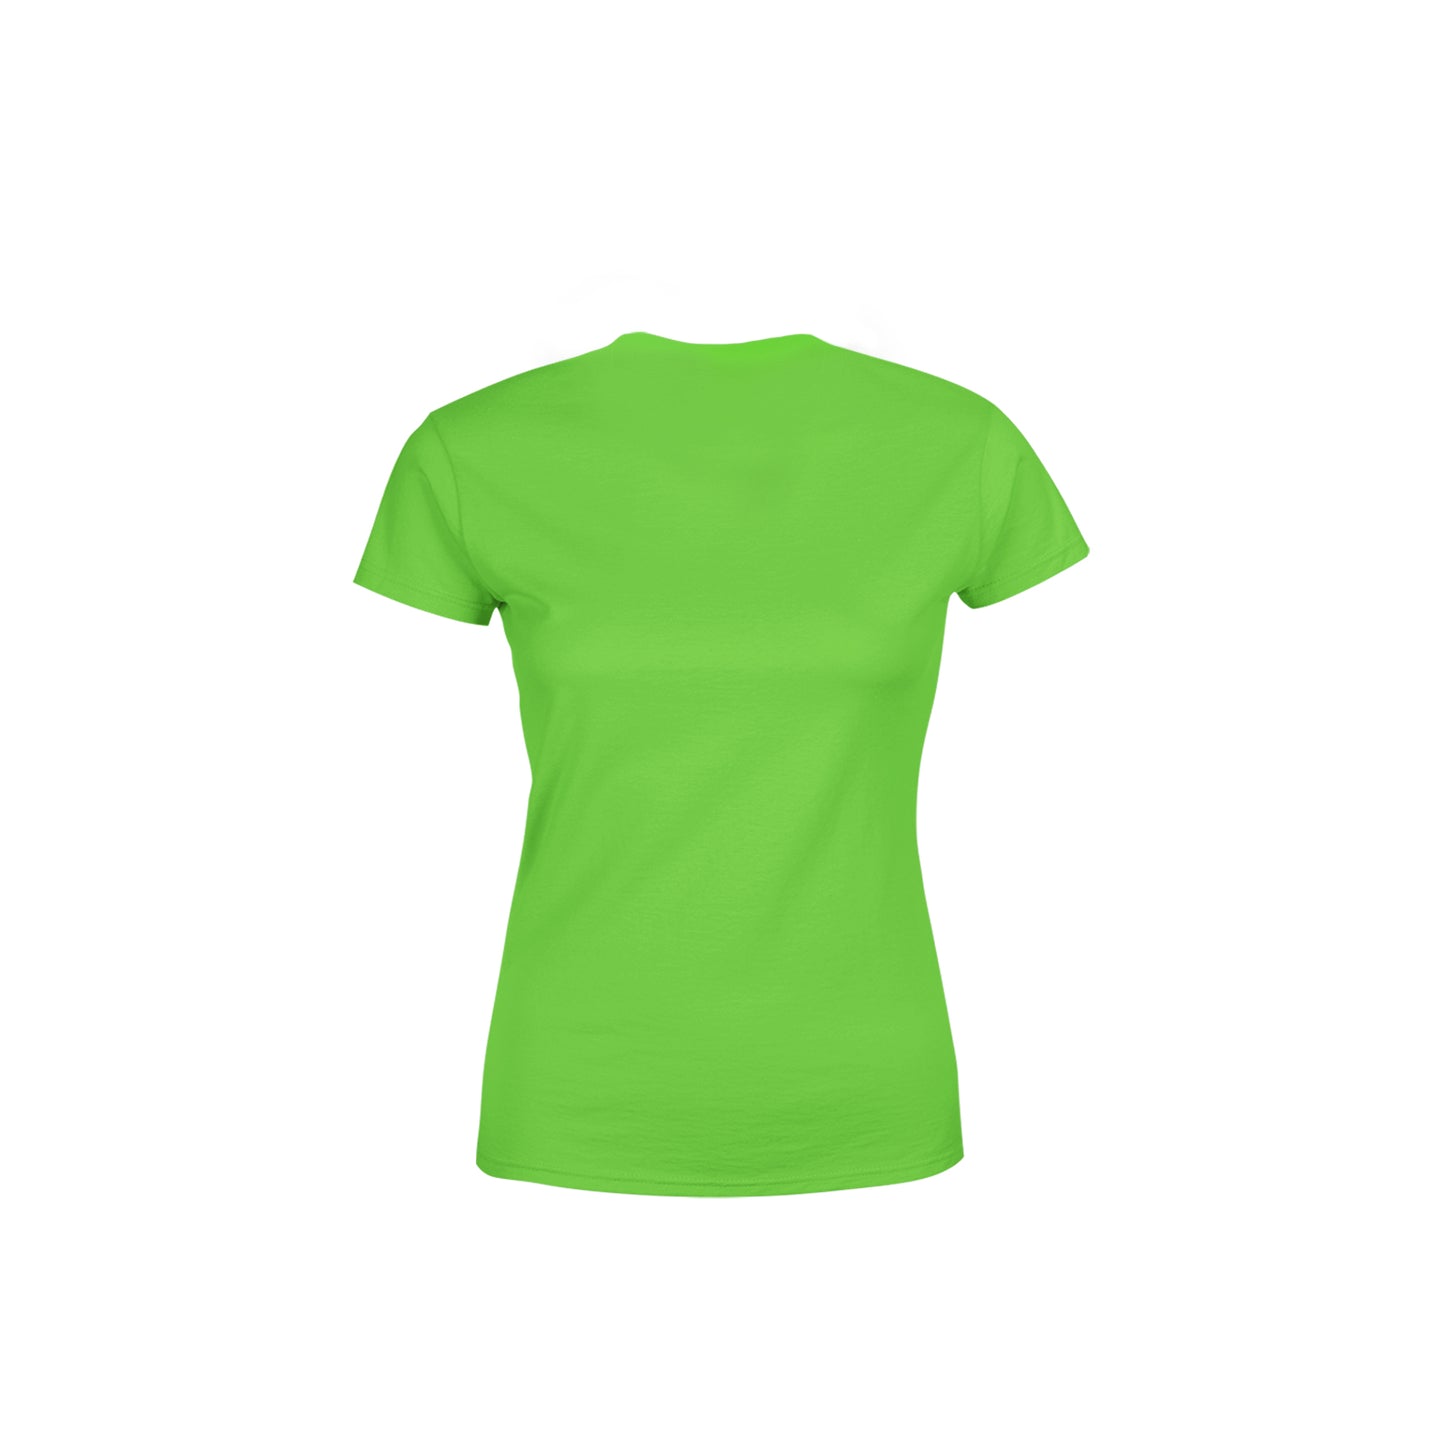 96 Number Women's T-Shirt (Liril Green)